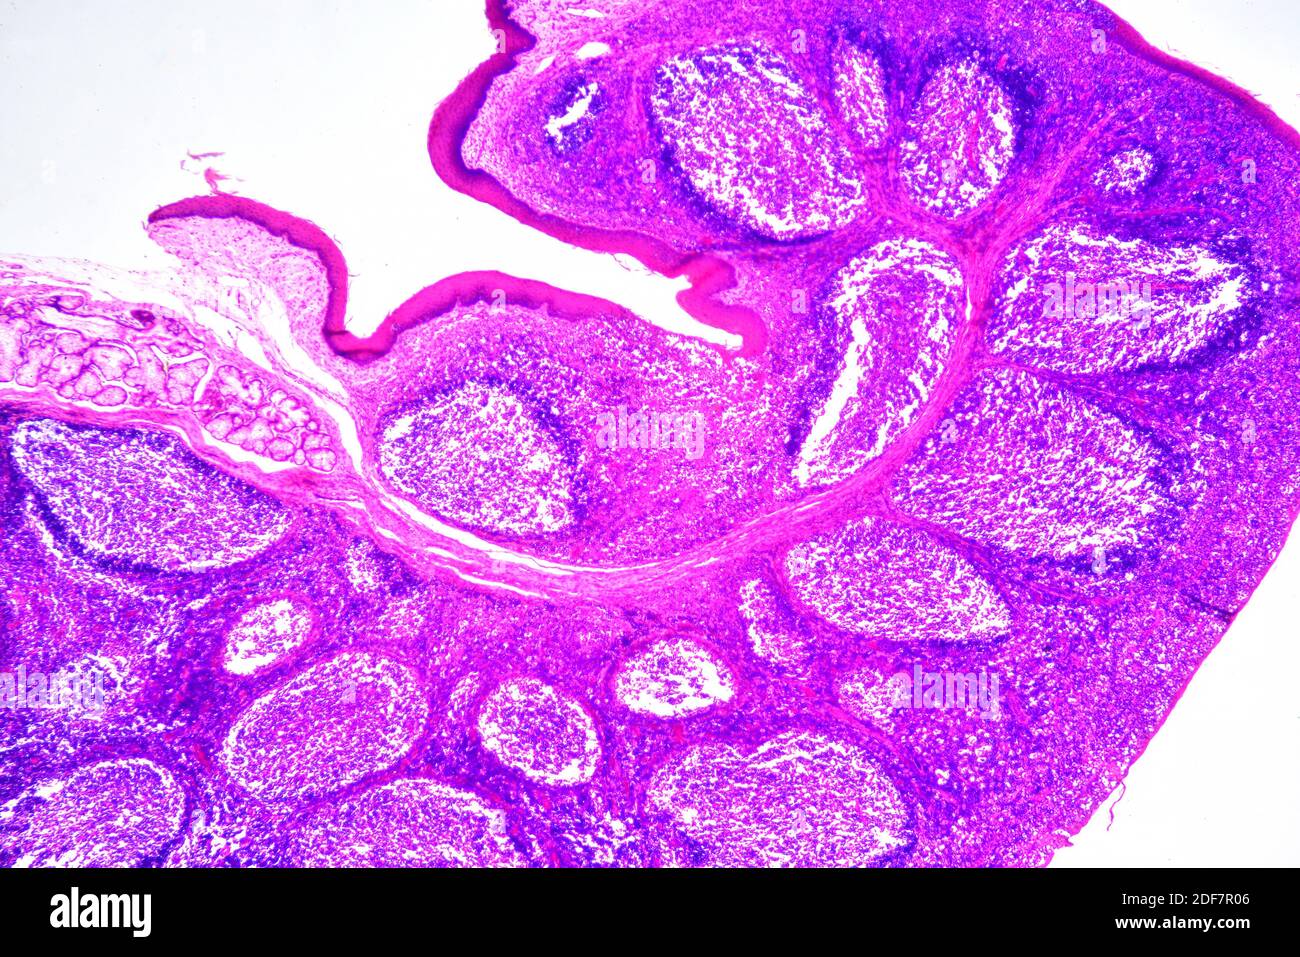 Humaner tonsillen-Abschnitt mit kreisförmigen lymphoiden Follikeln und sekretorischen Drüsen. Helle Mikrographie, Hämatoxylin-Eosin-Färbung. X30 beim Drucken Stockfoto